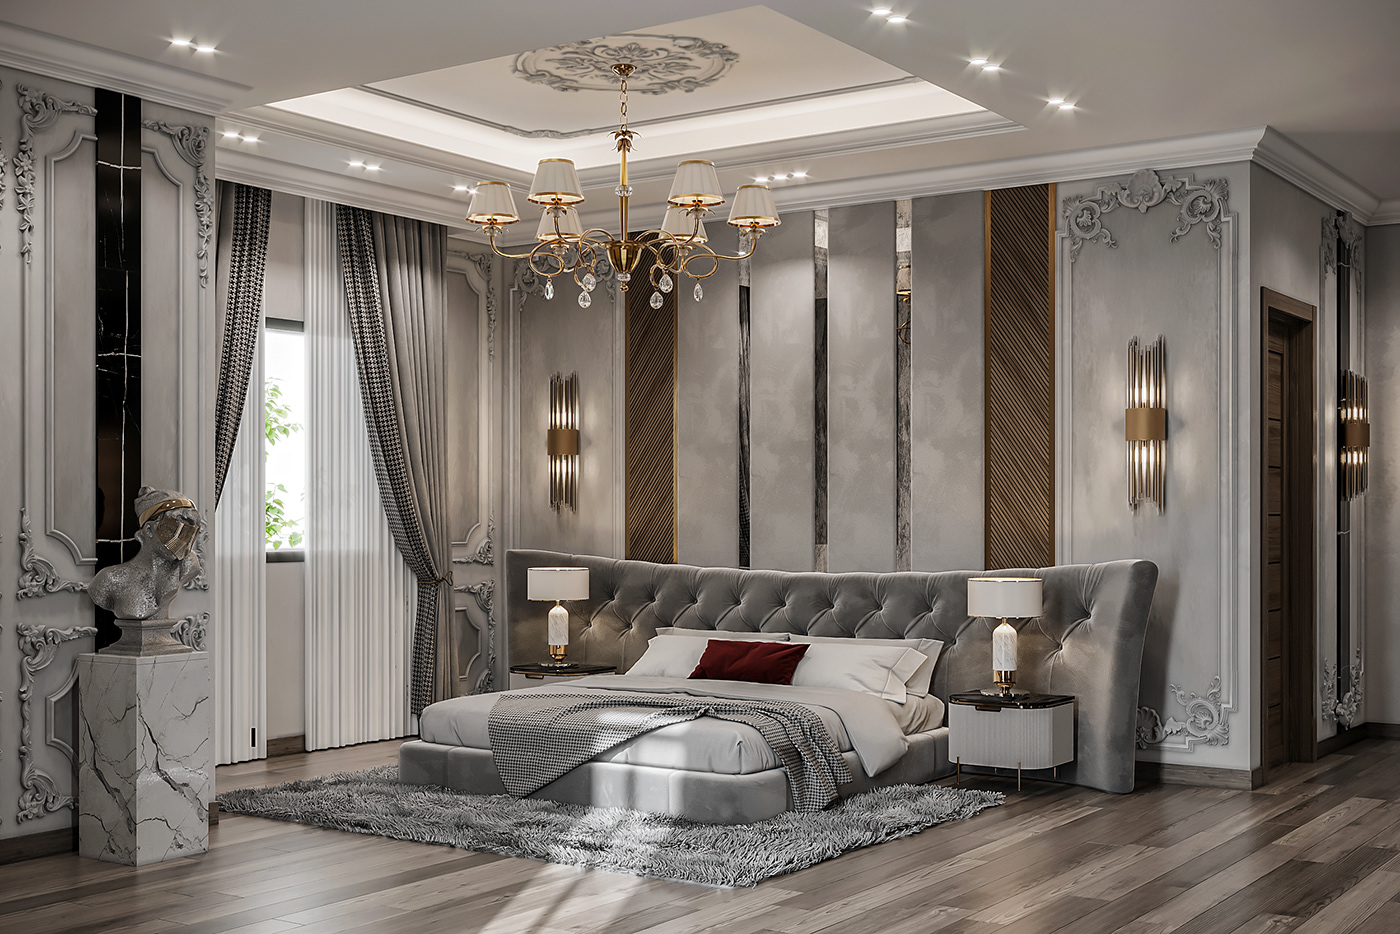 3ds max architecture bedroom CGI Classic classic design corona Interior interior design  Render